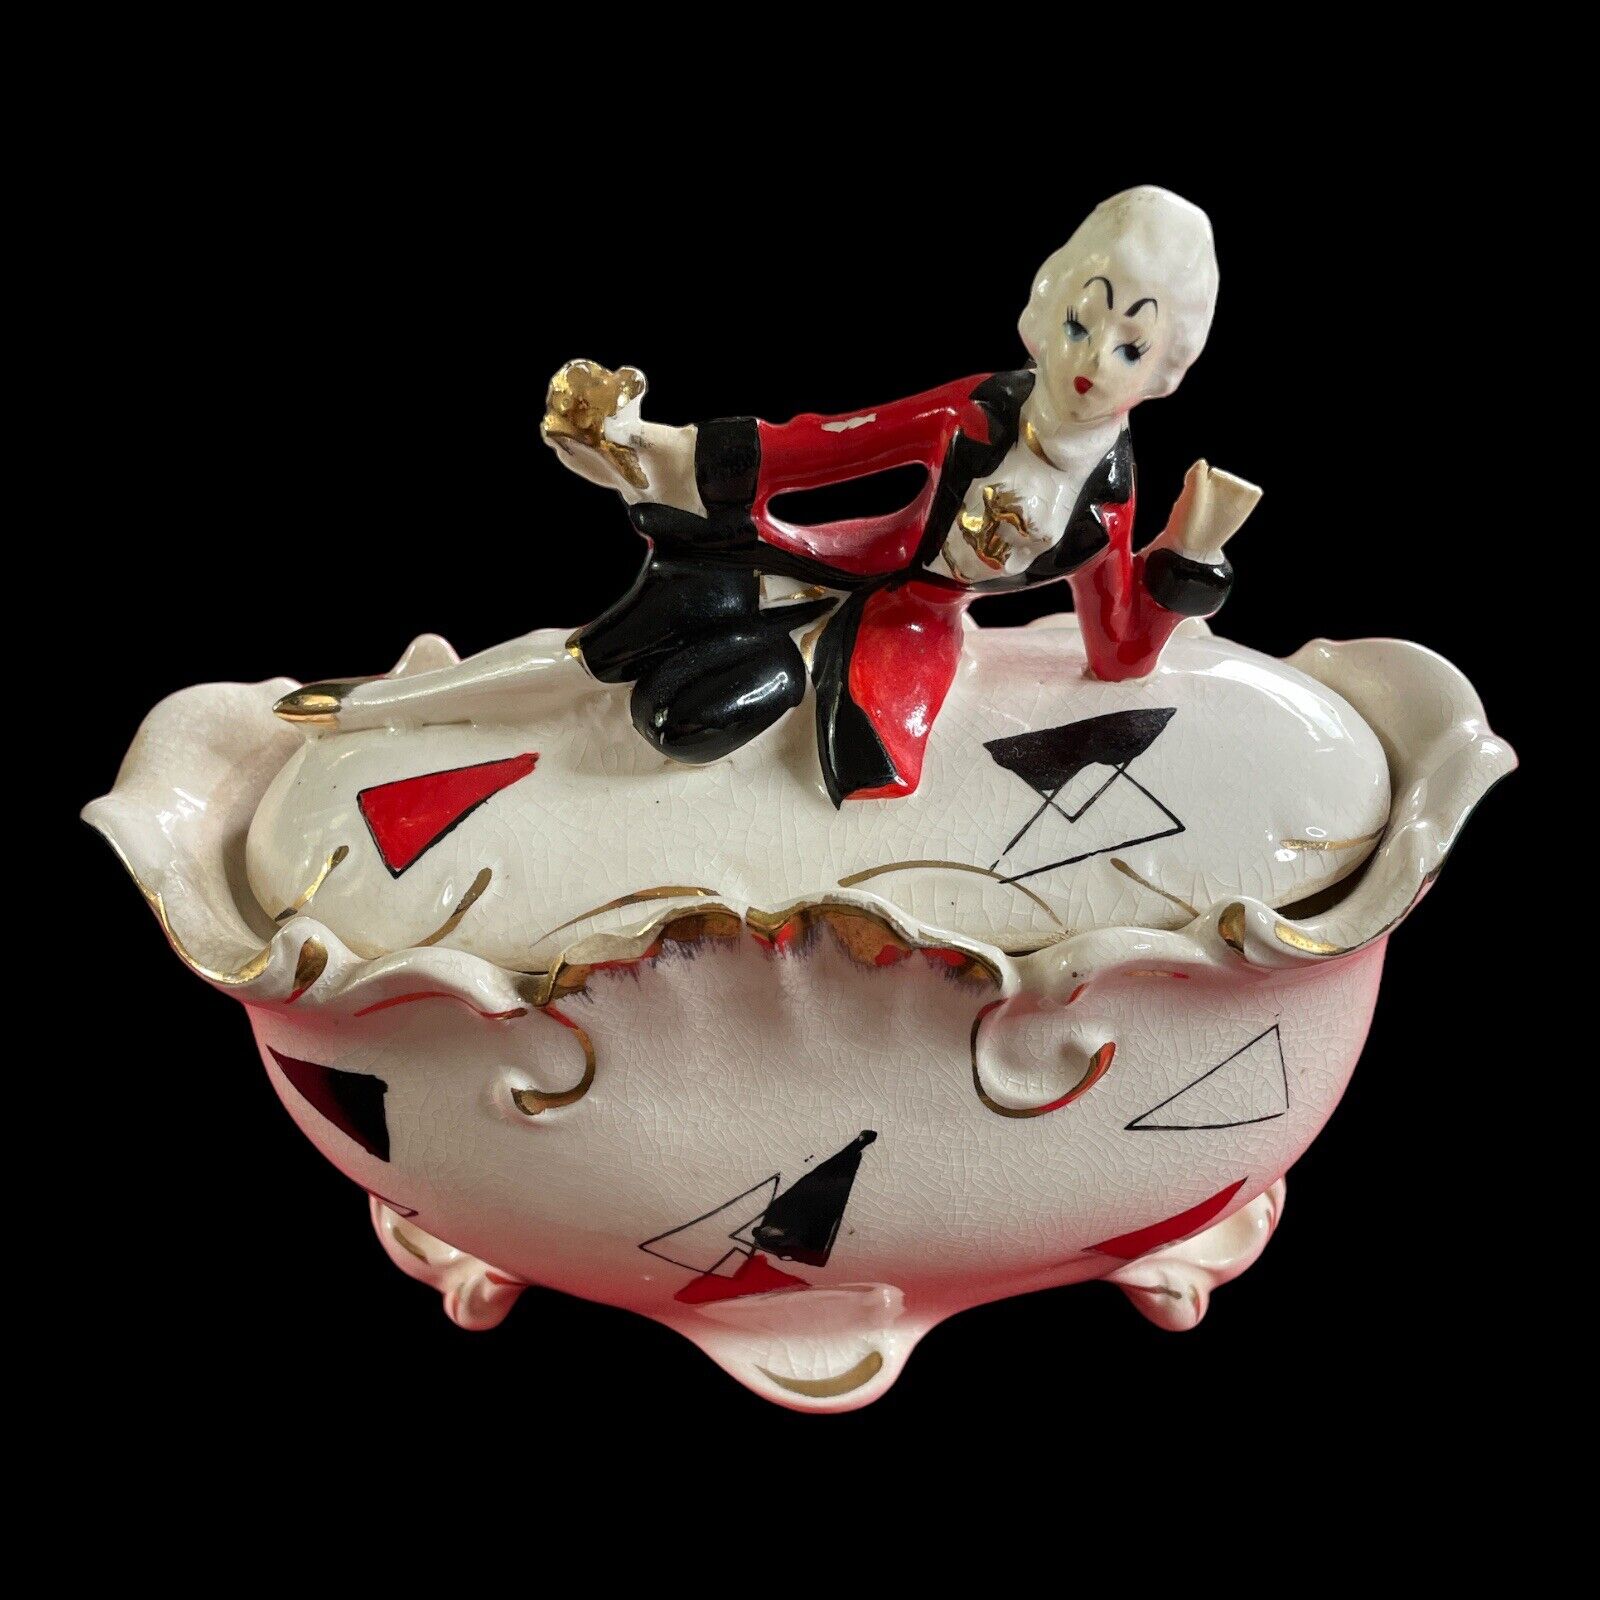 Vintage French Provincial porcelain figurine trinket box red/black/gold SKU G97